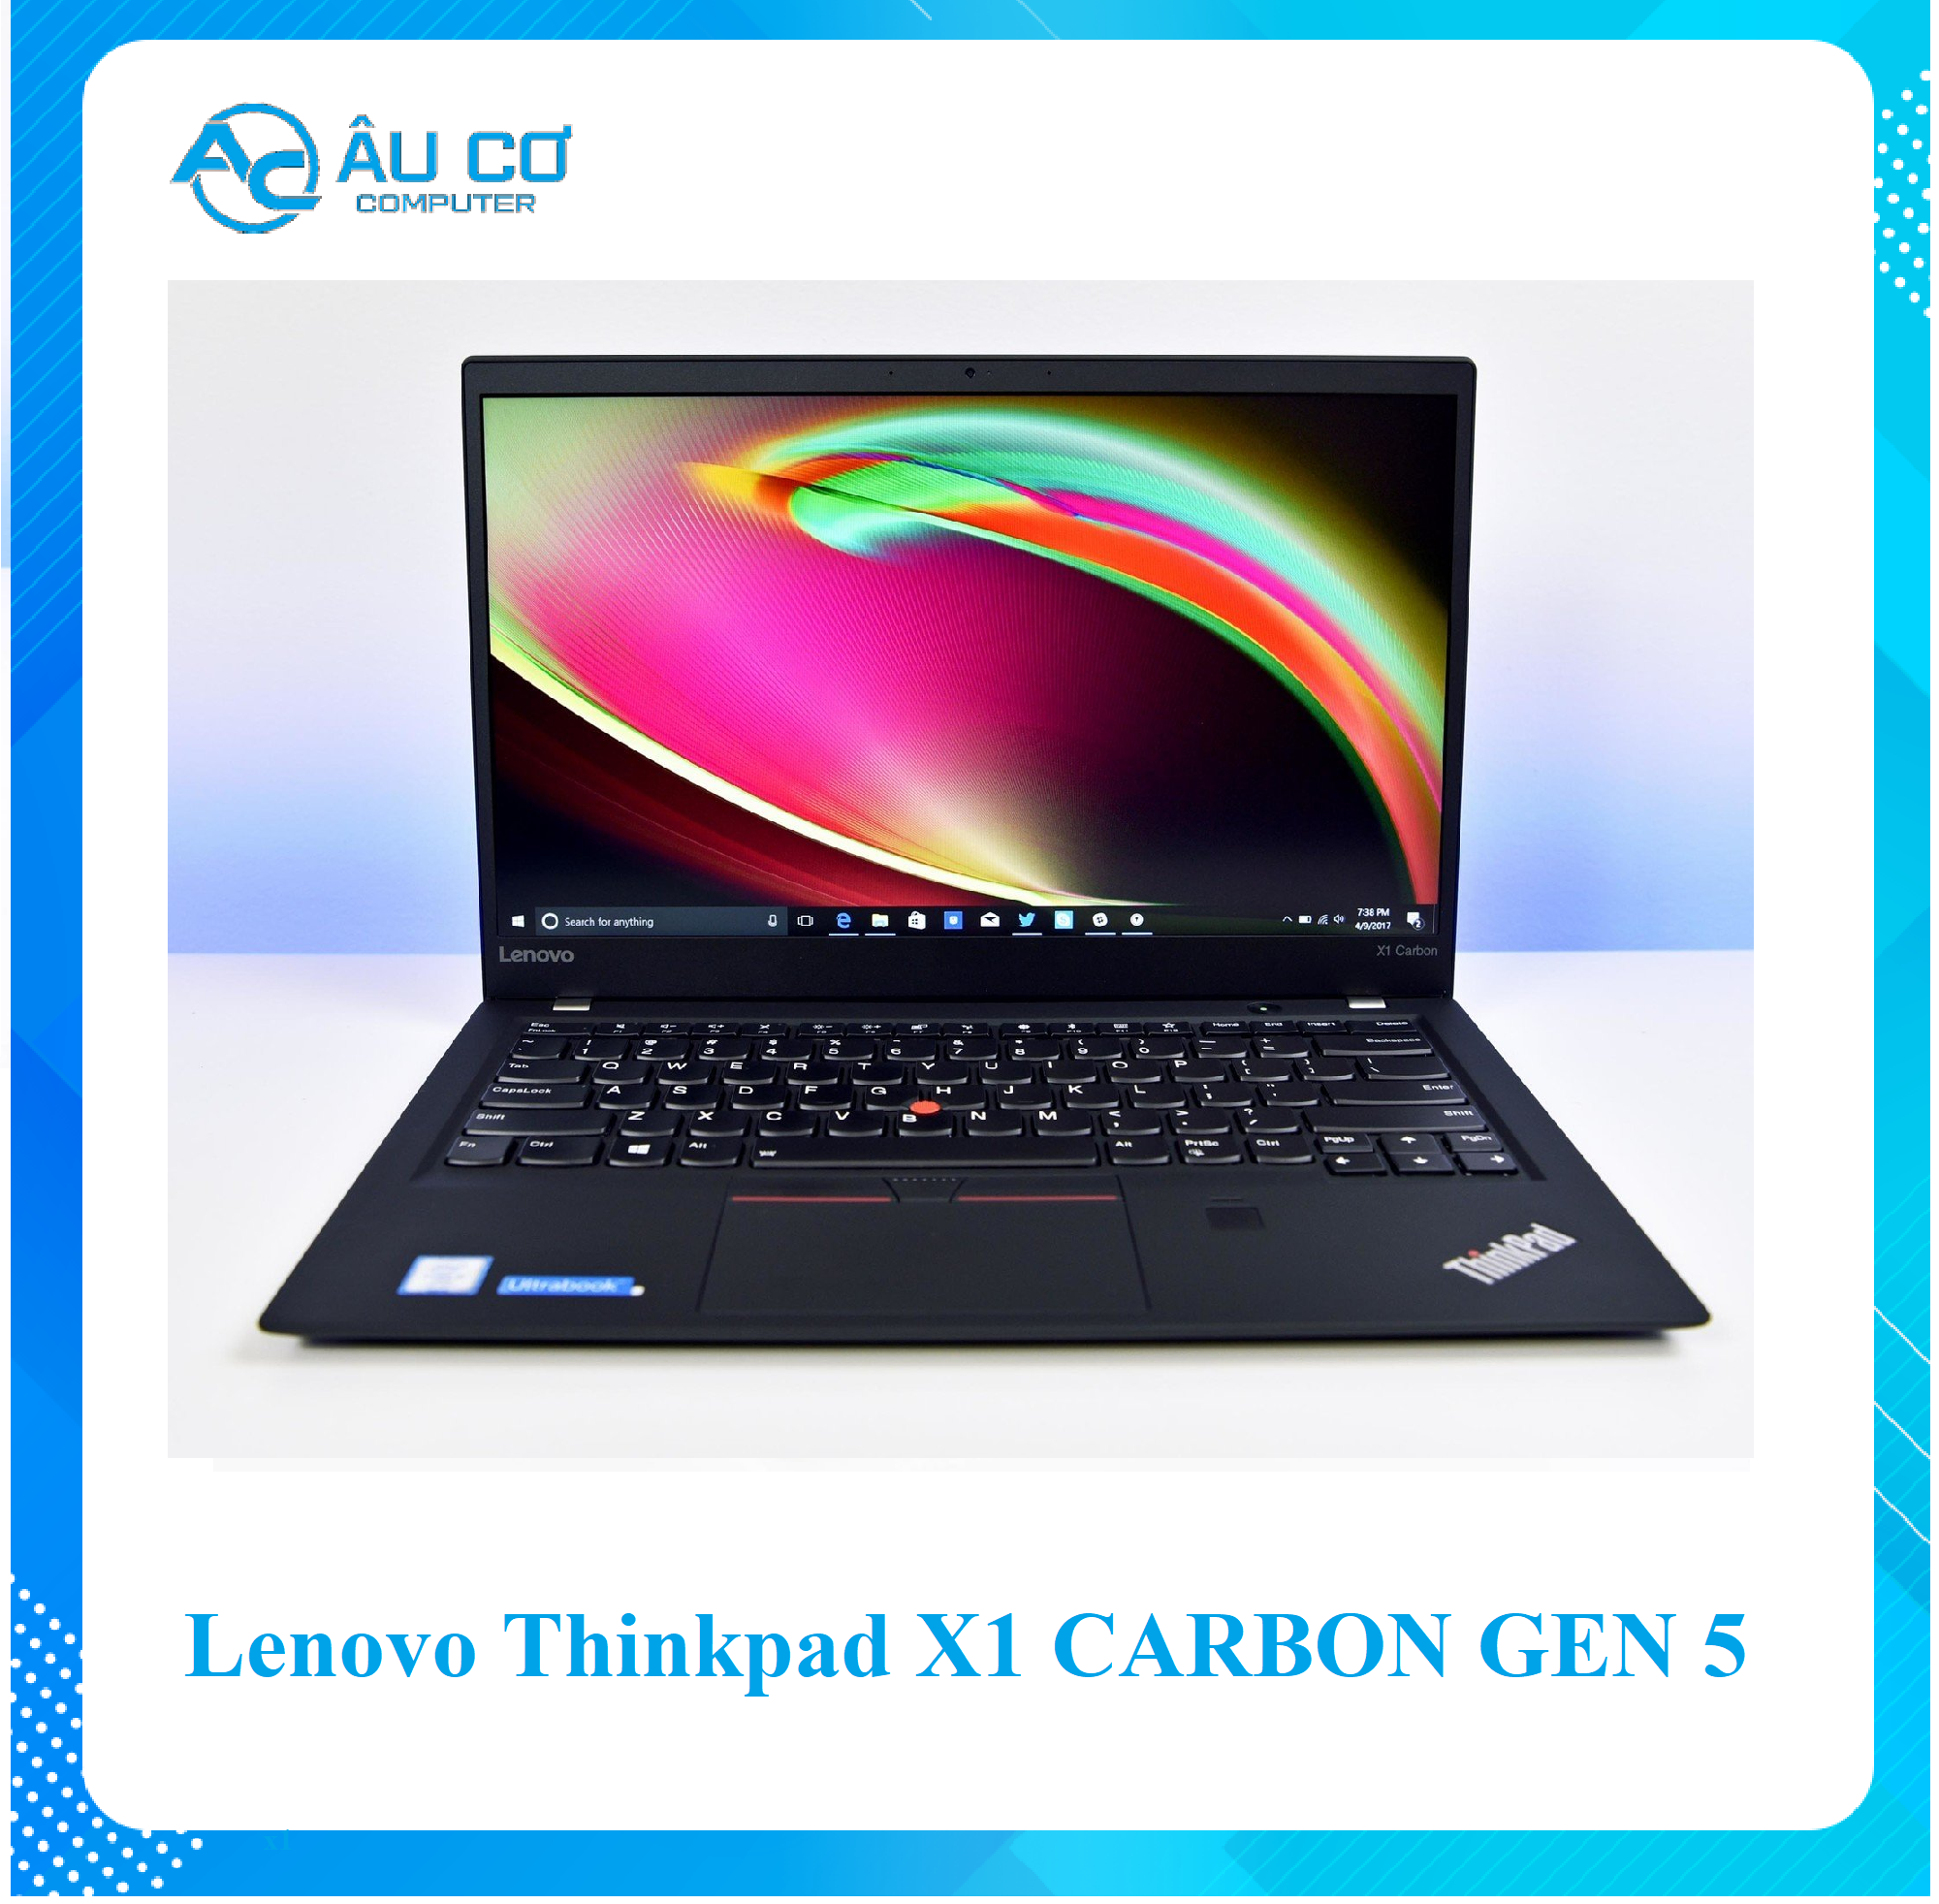 Lenovo ThinkPad X1 Carbon Gen 5 Core i7-7600U RAM 16GB SSD 256GB 14 inch  FHD Windows 10 Pro - Hàng Chính Hãng